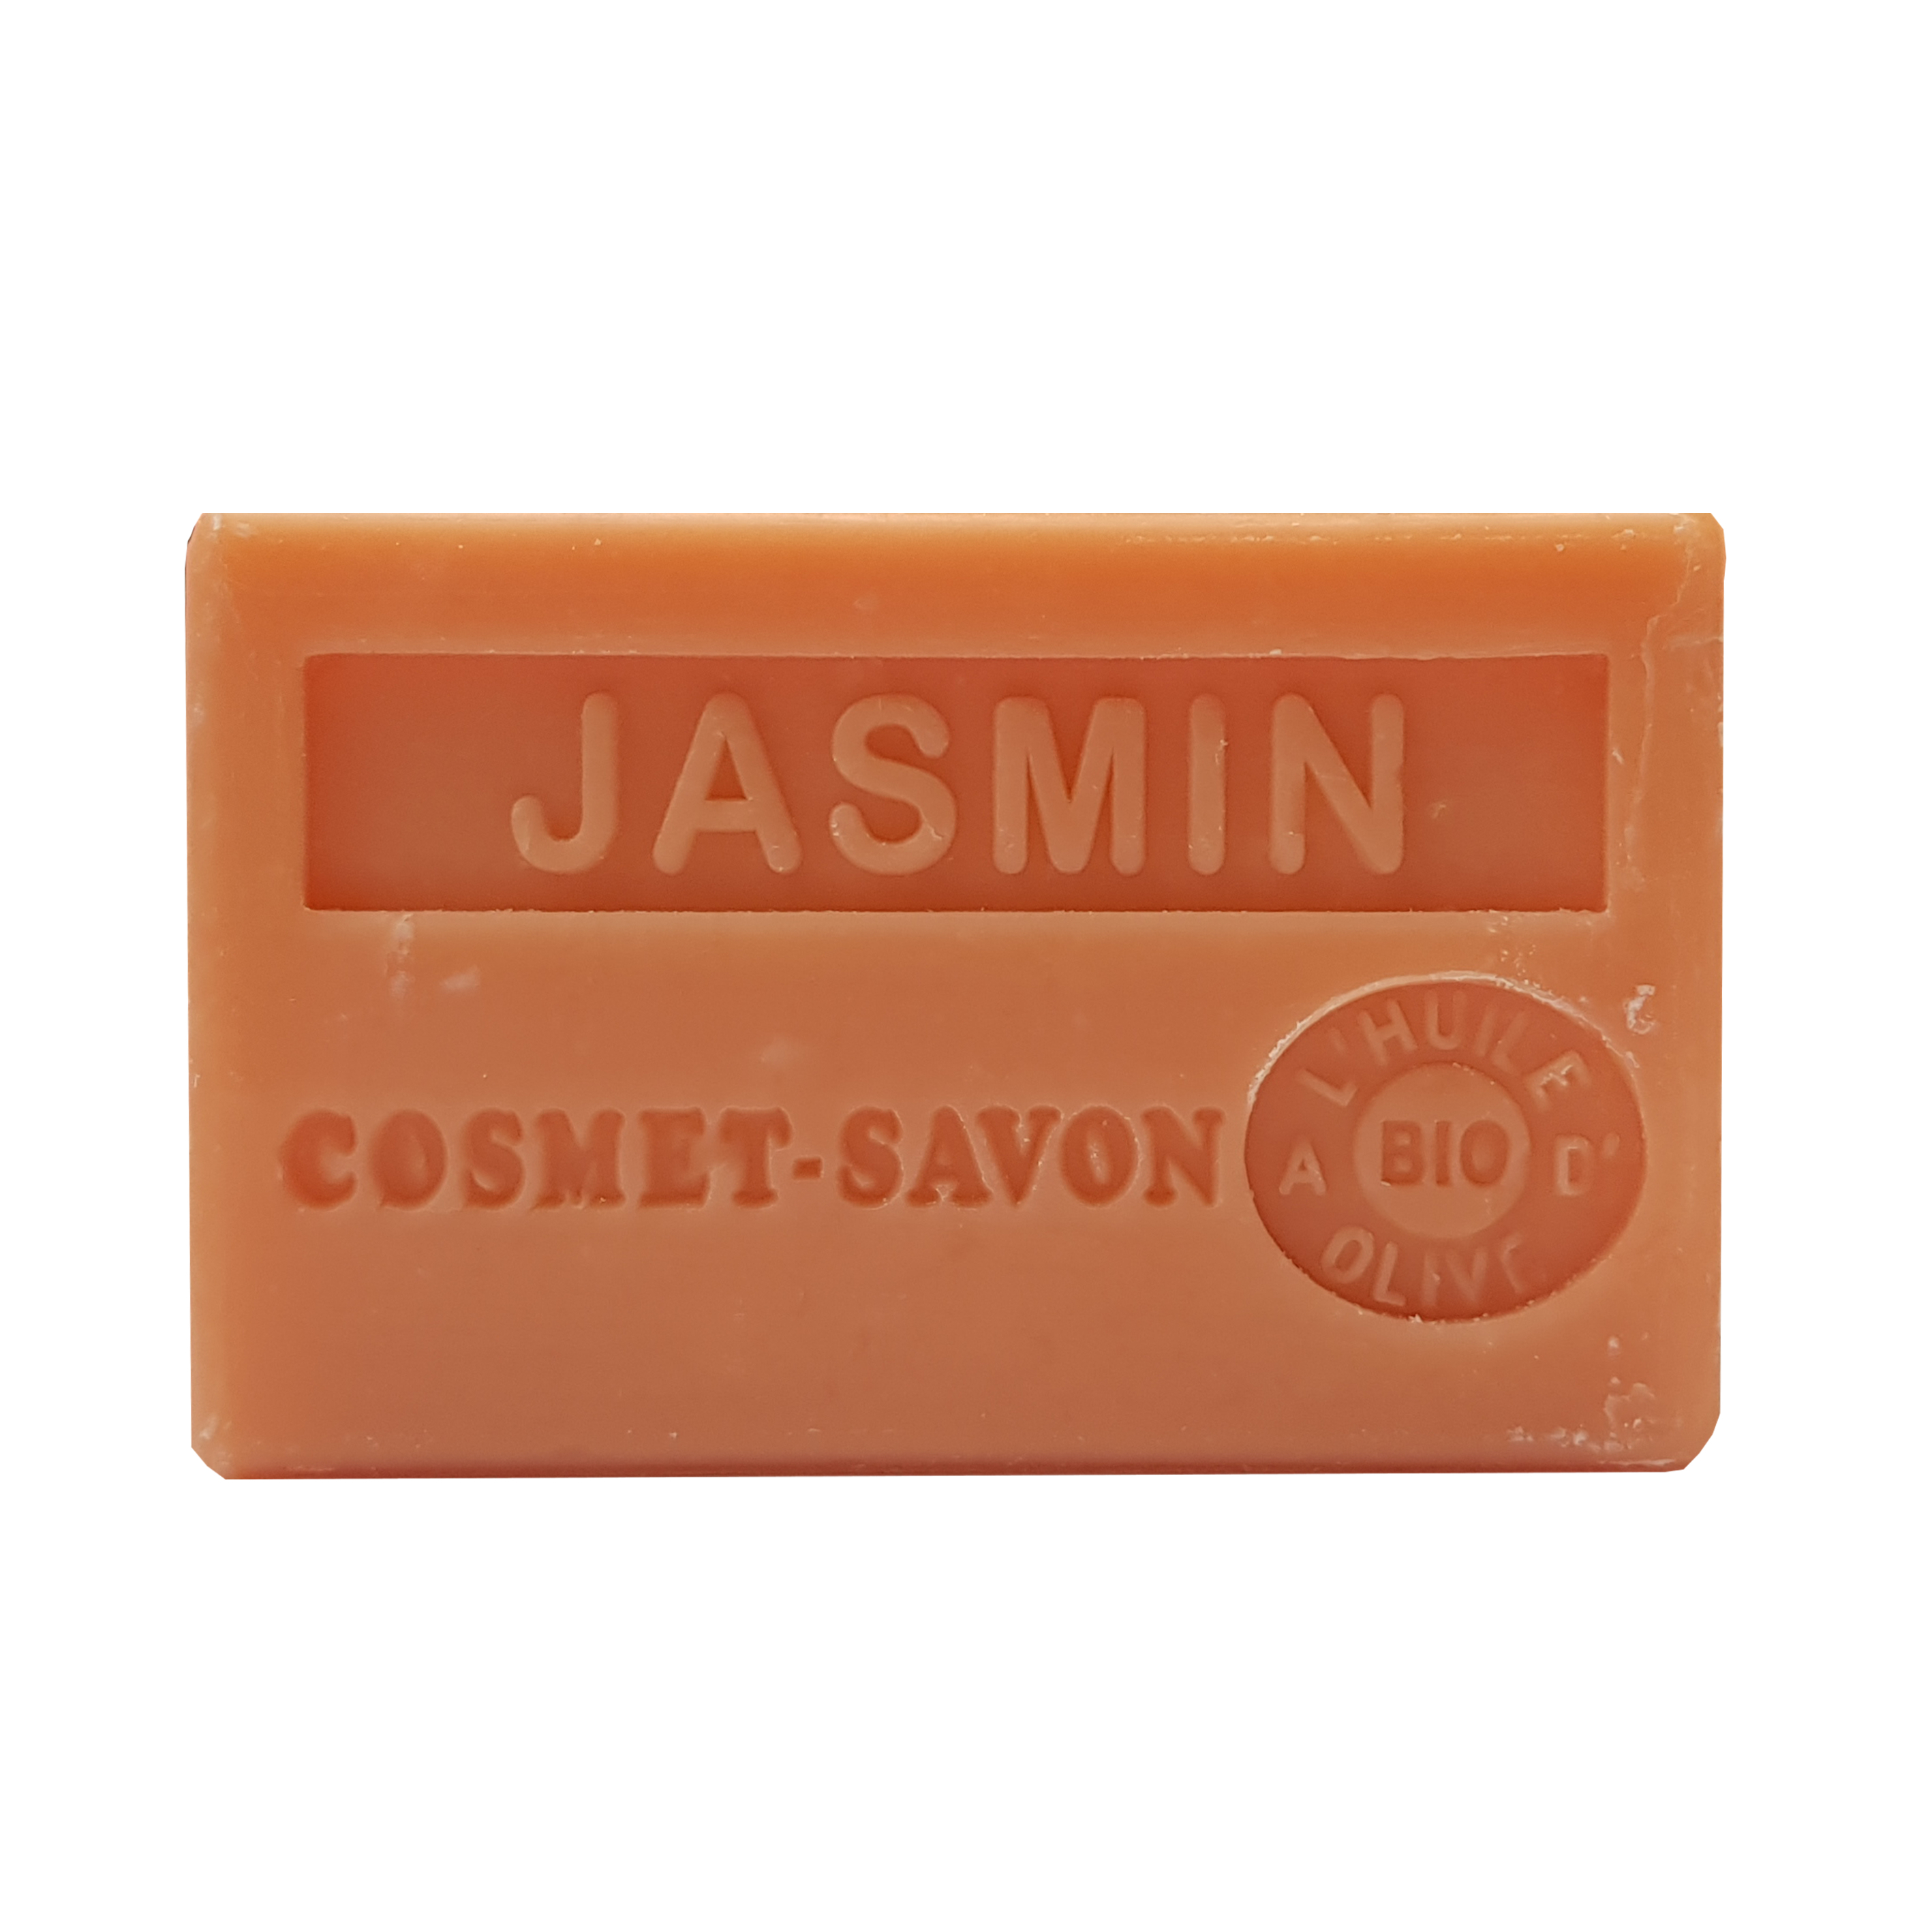 jasmin-savon-125gr-au-beurre-de-karite-bio-cosmet-savon-3665205006423-face-JPEG